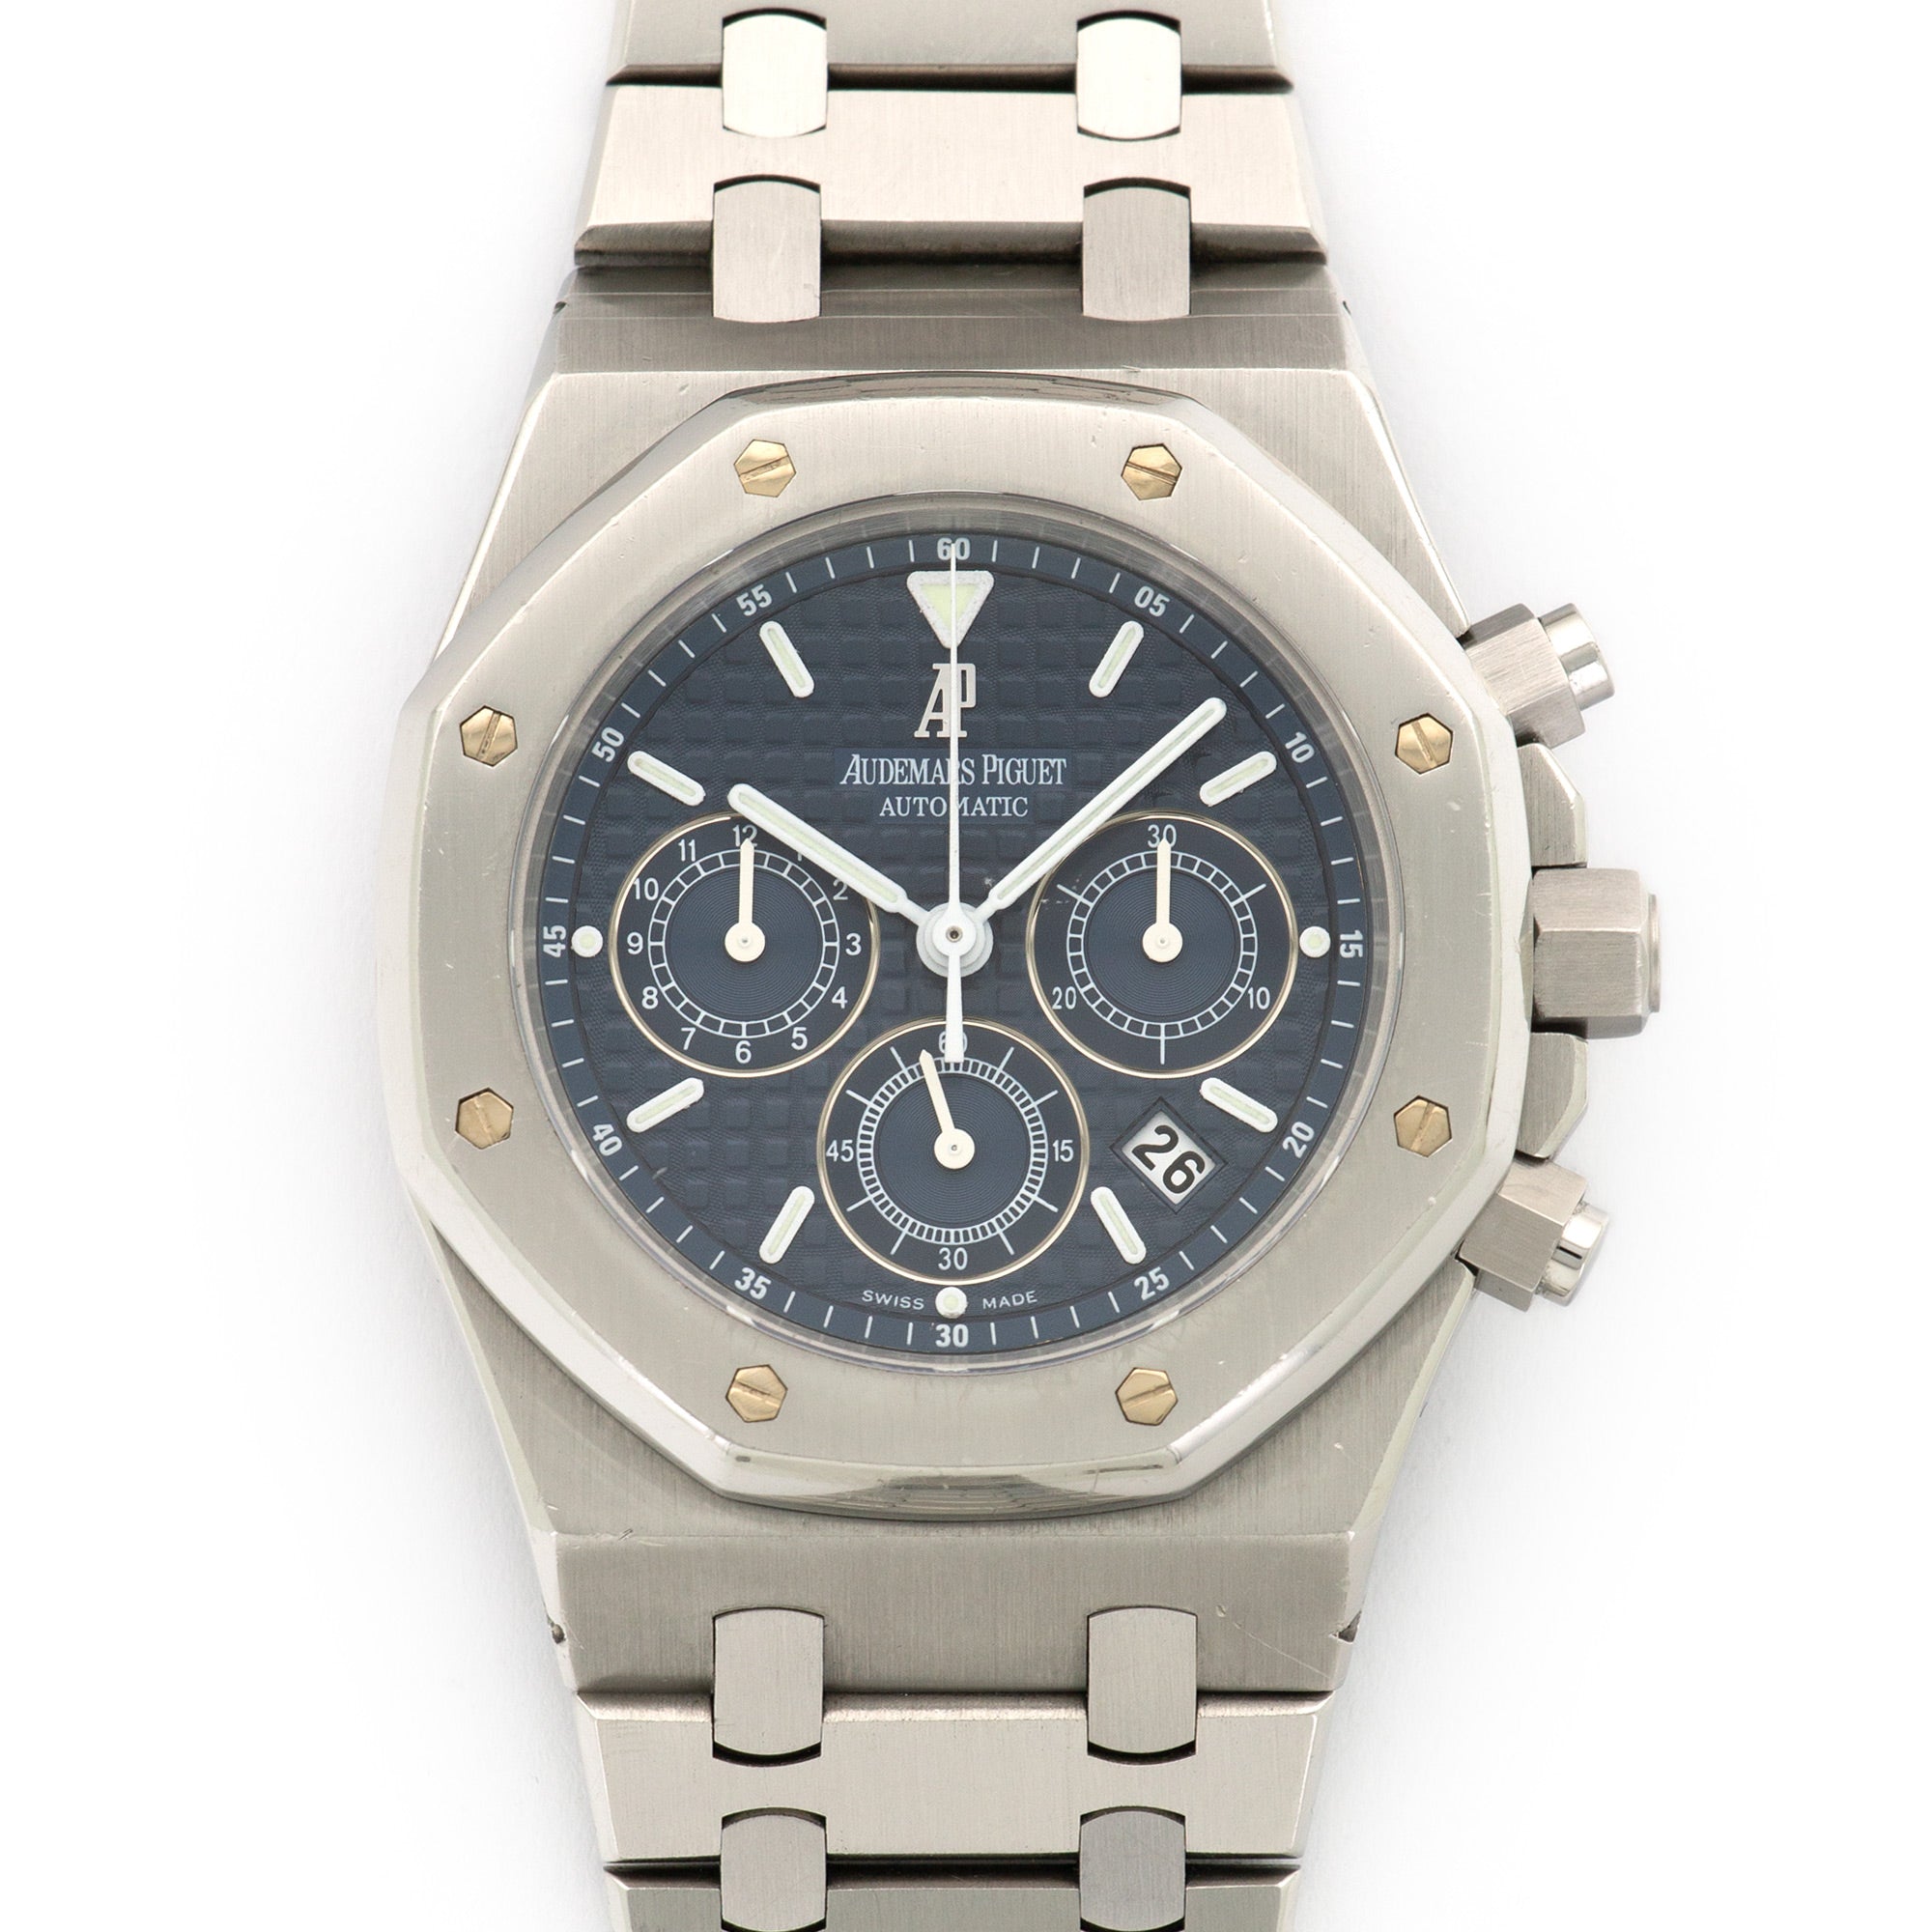 Audemars Piguet - Audemars Piguet Royal Oak Chronograph Watch - The Keystone Watches